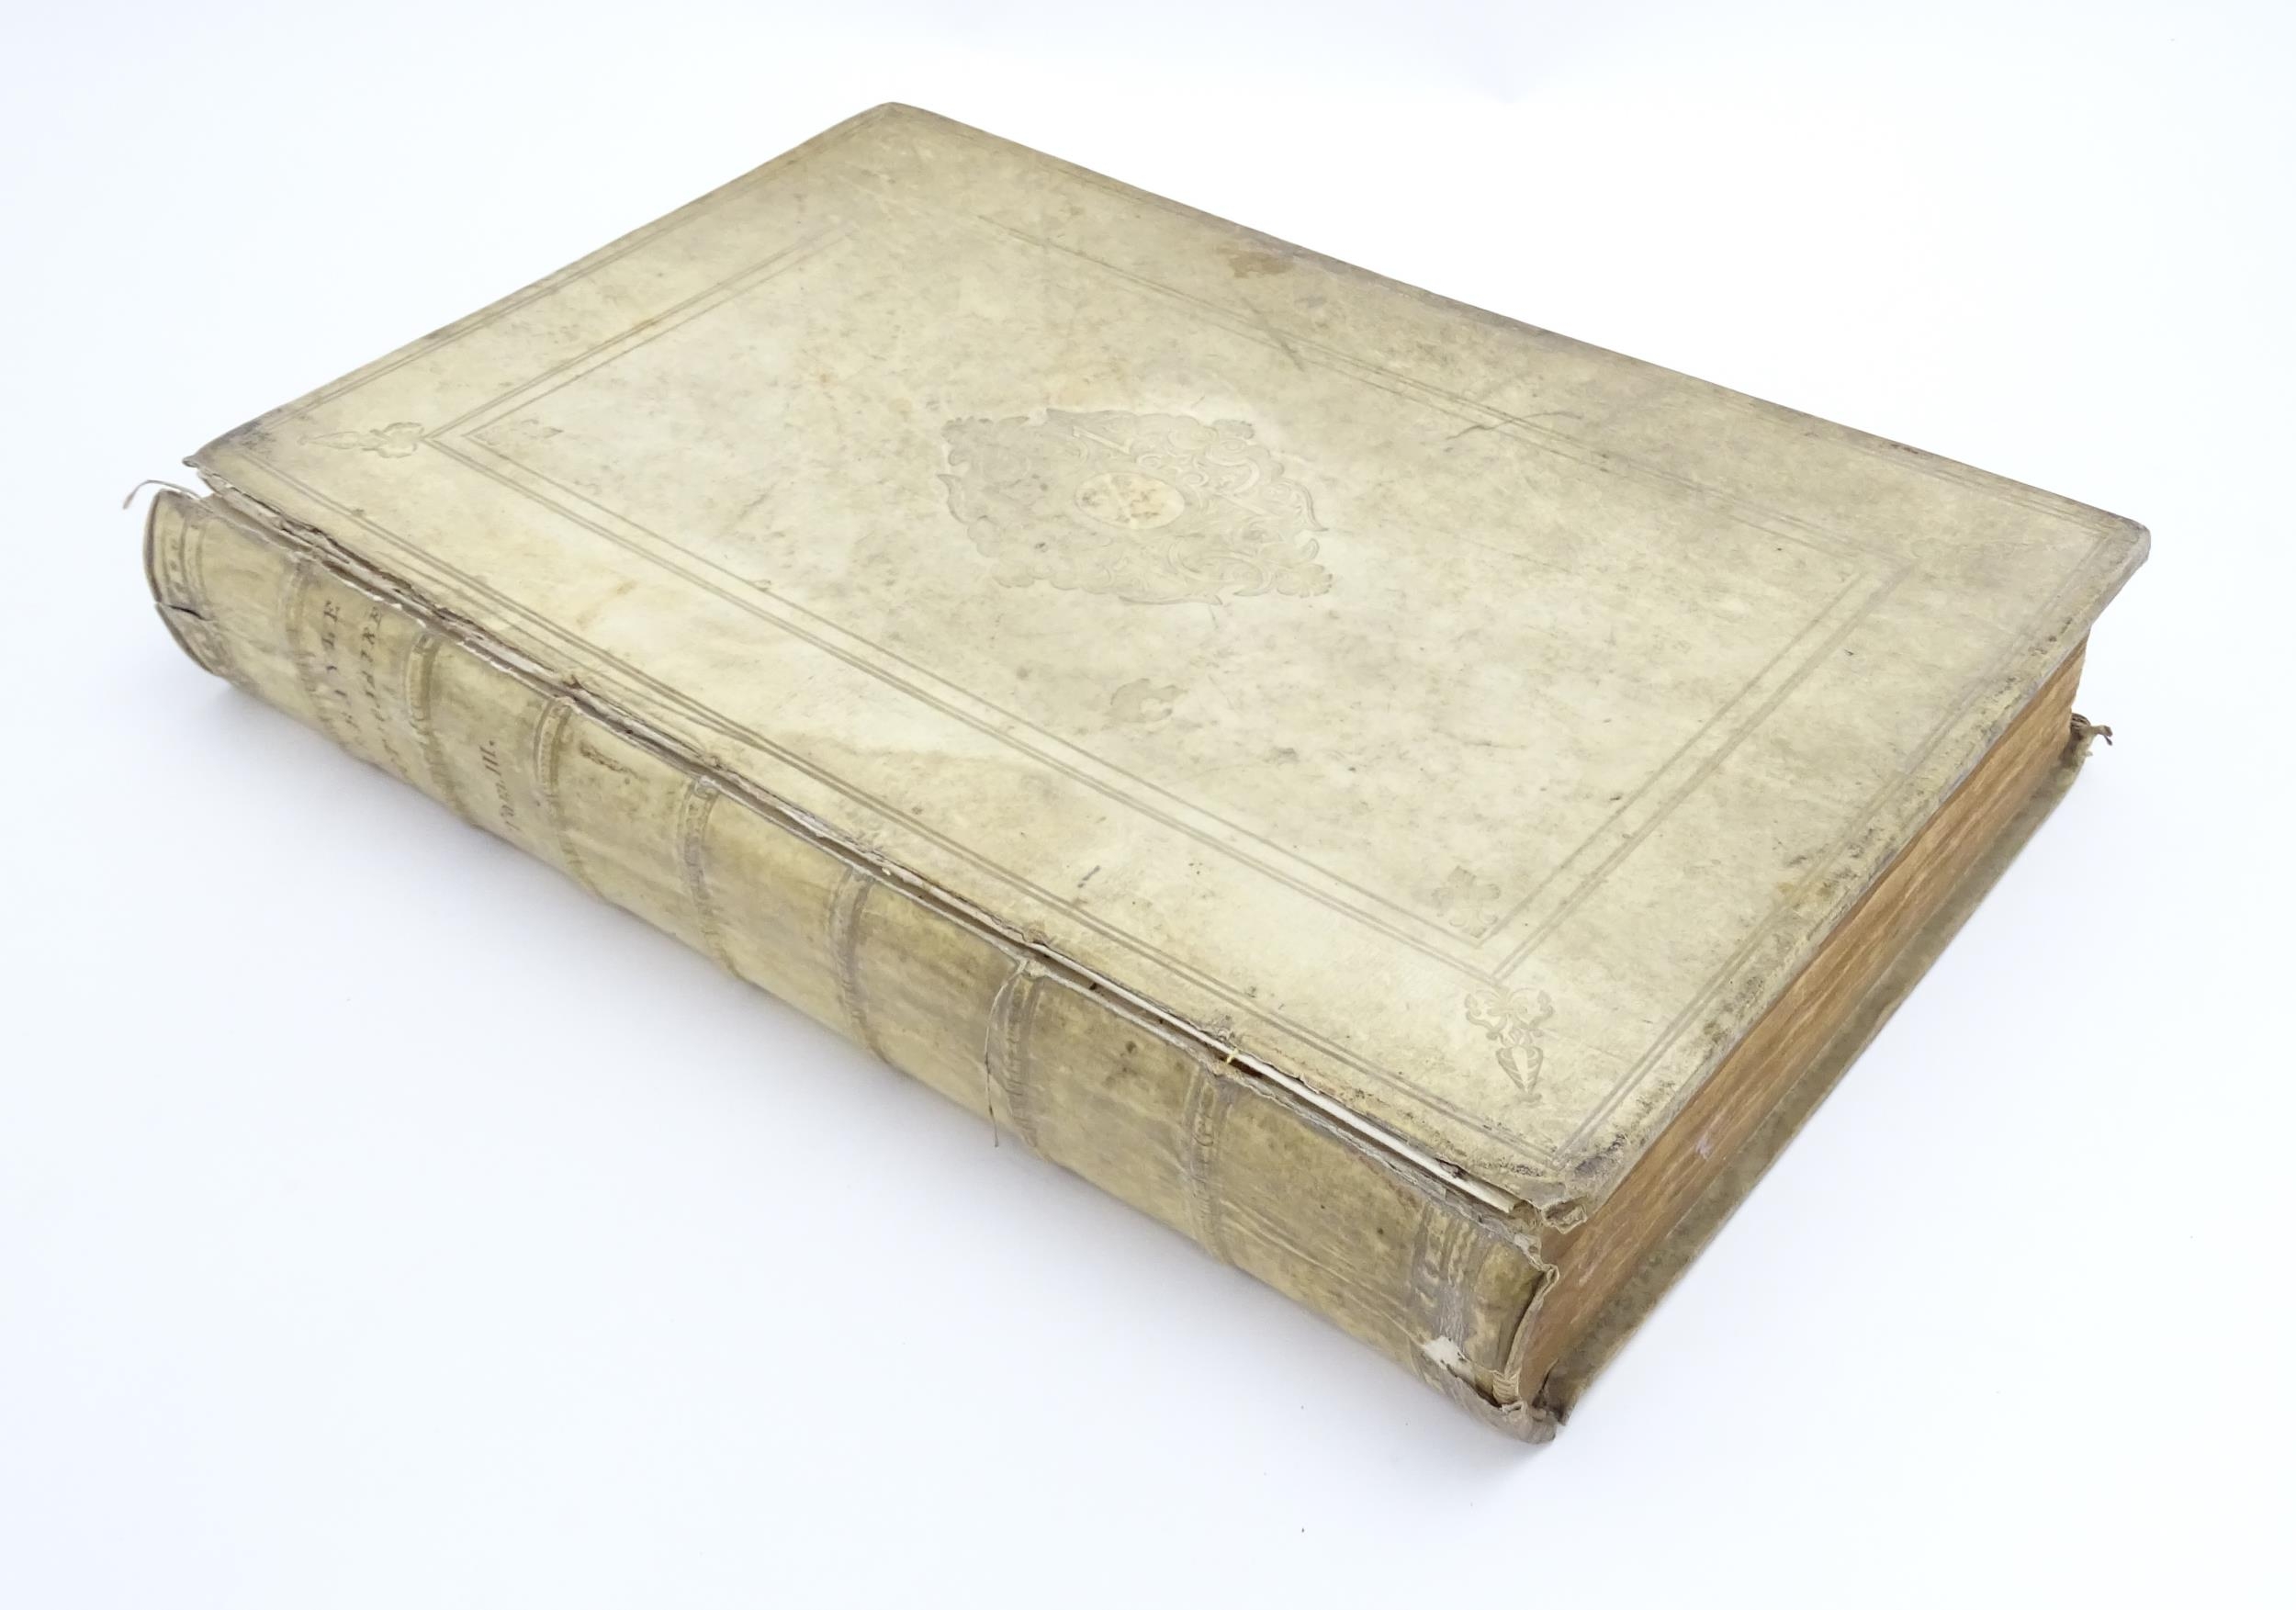 Book: Dictionaire Historique et Critique, by Mr Pierre Bayle. Published 1711 Please Note - we do not